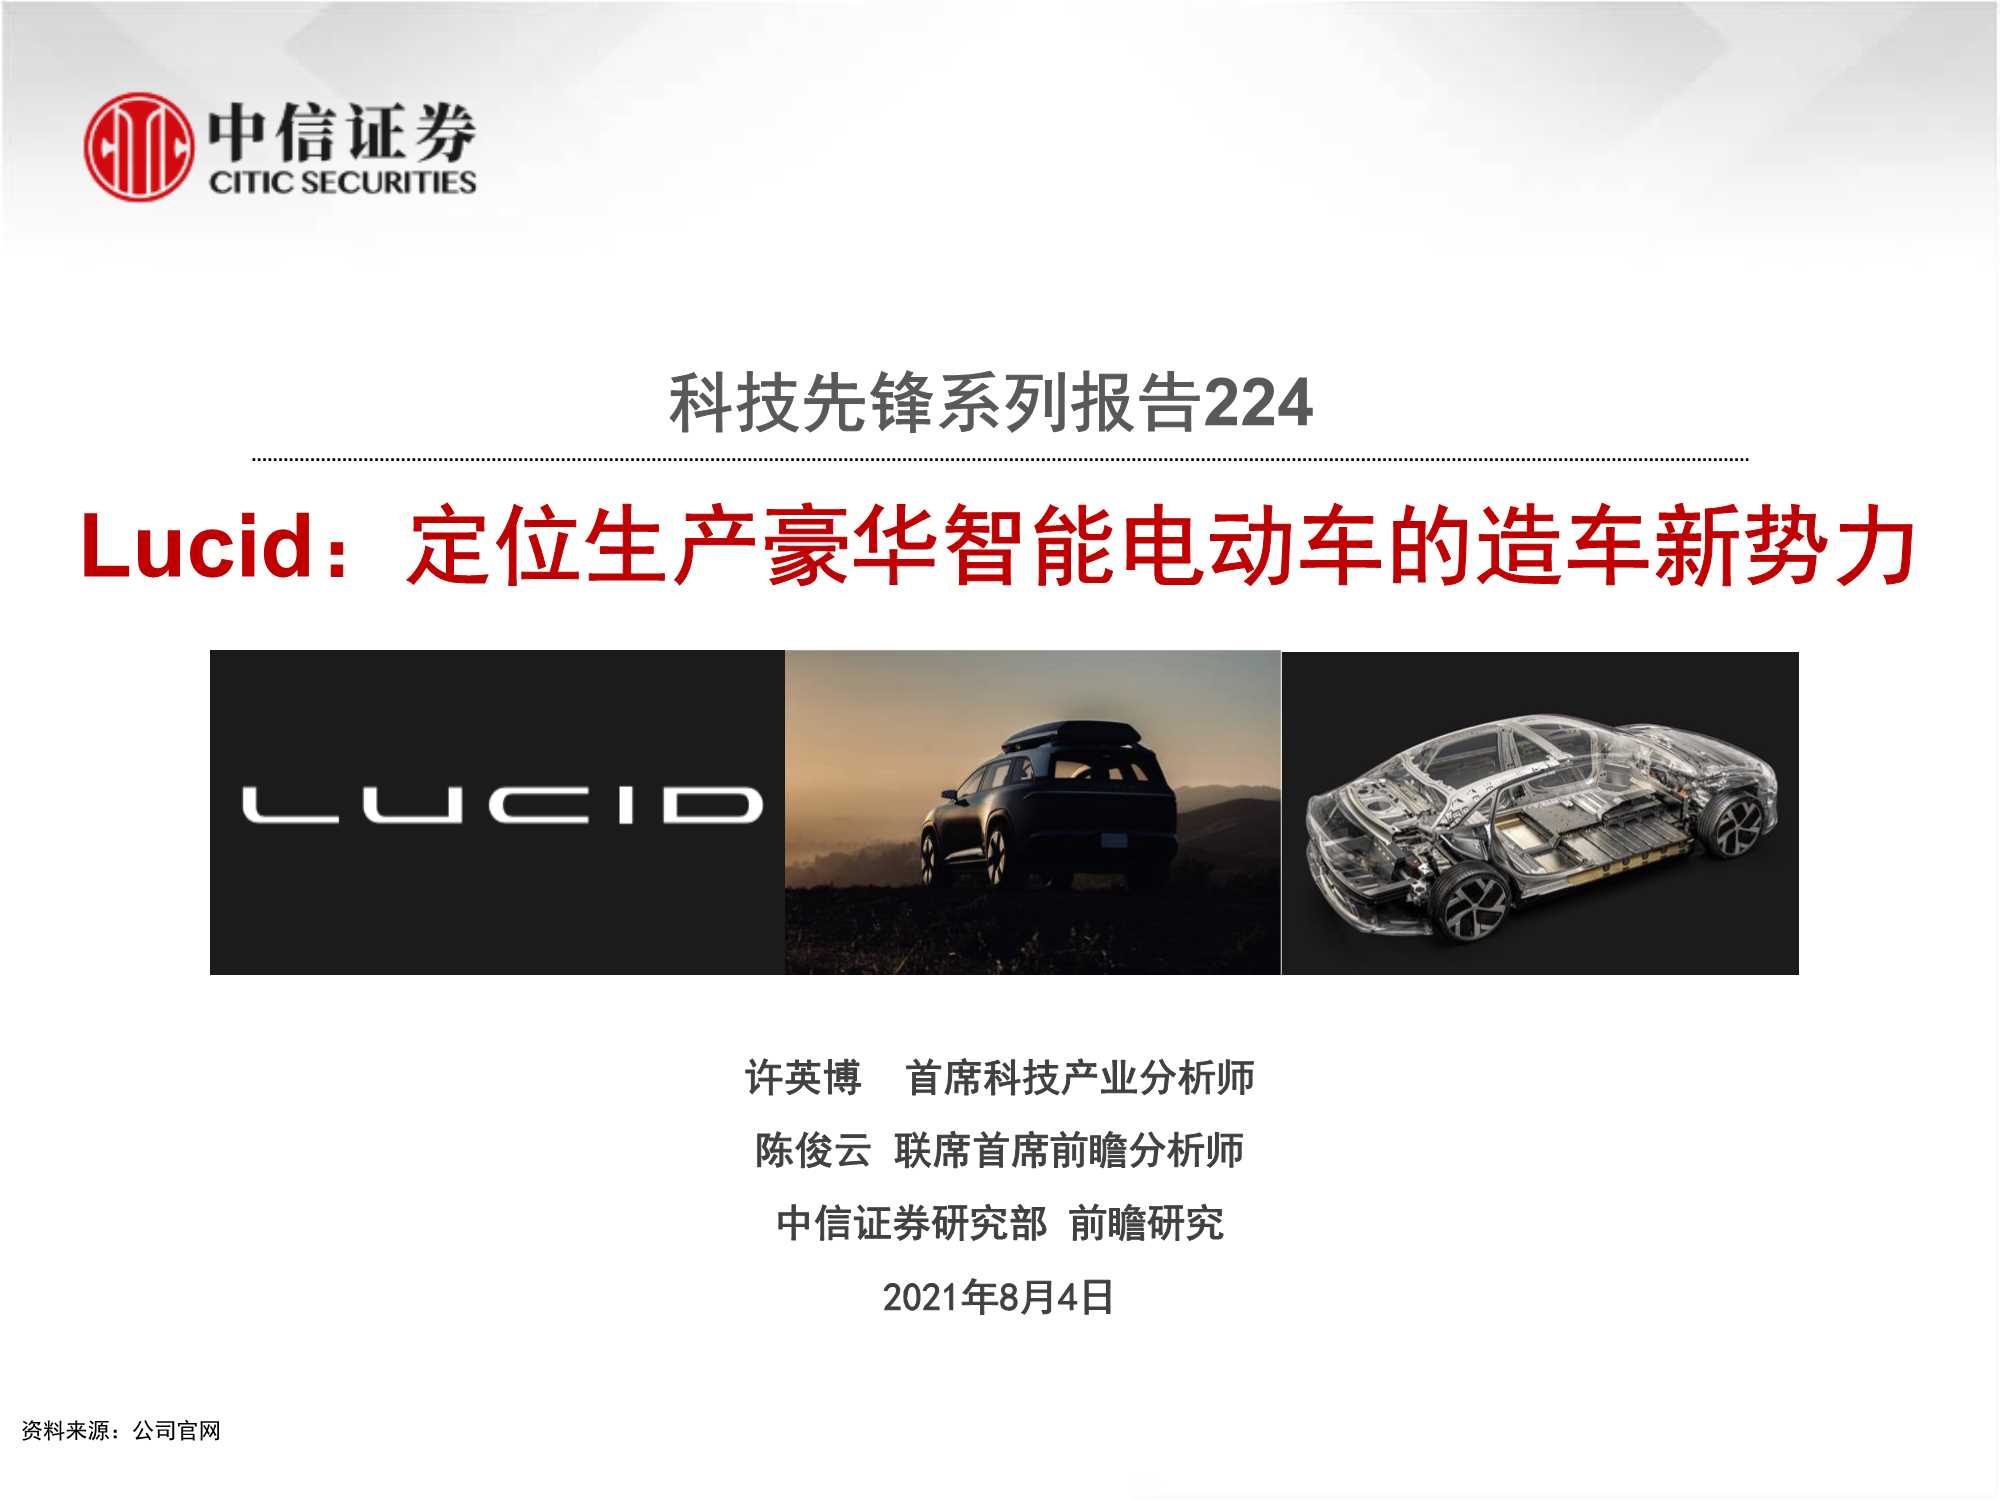 中信证券-科技行业先锋系列报告224：Lucid，定位生产豪华智能电动车的造车新势力-20210804-30页